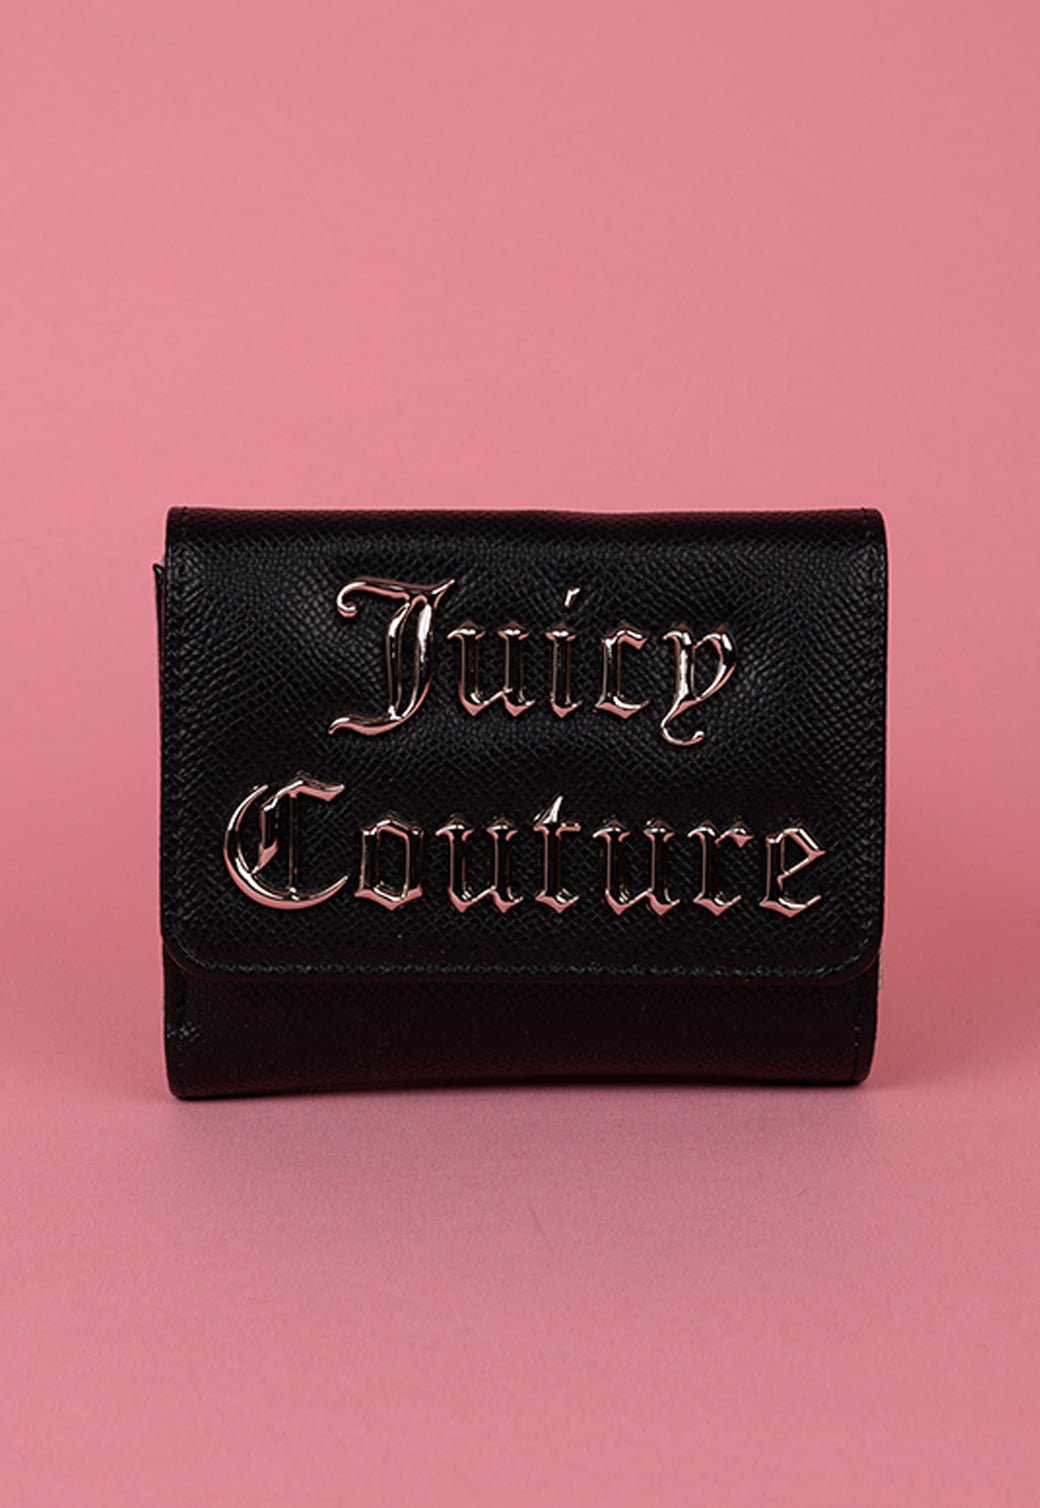 ארנק קטן עם לוגו מטאלי בולט - Juicy Couture